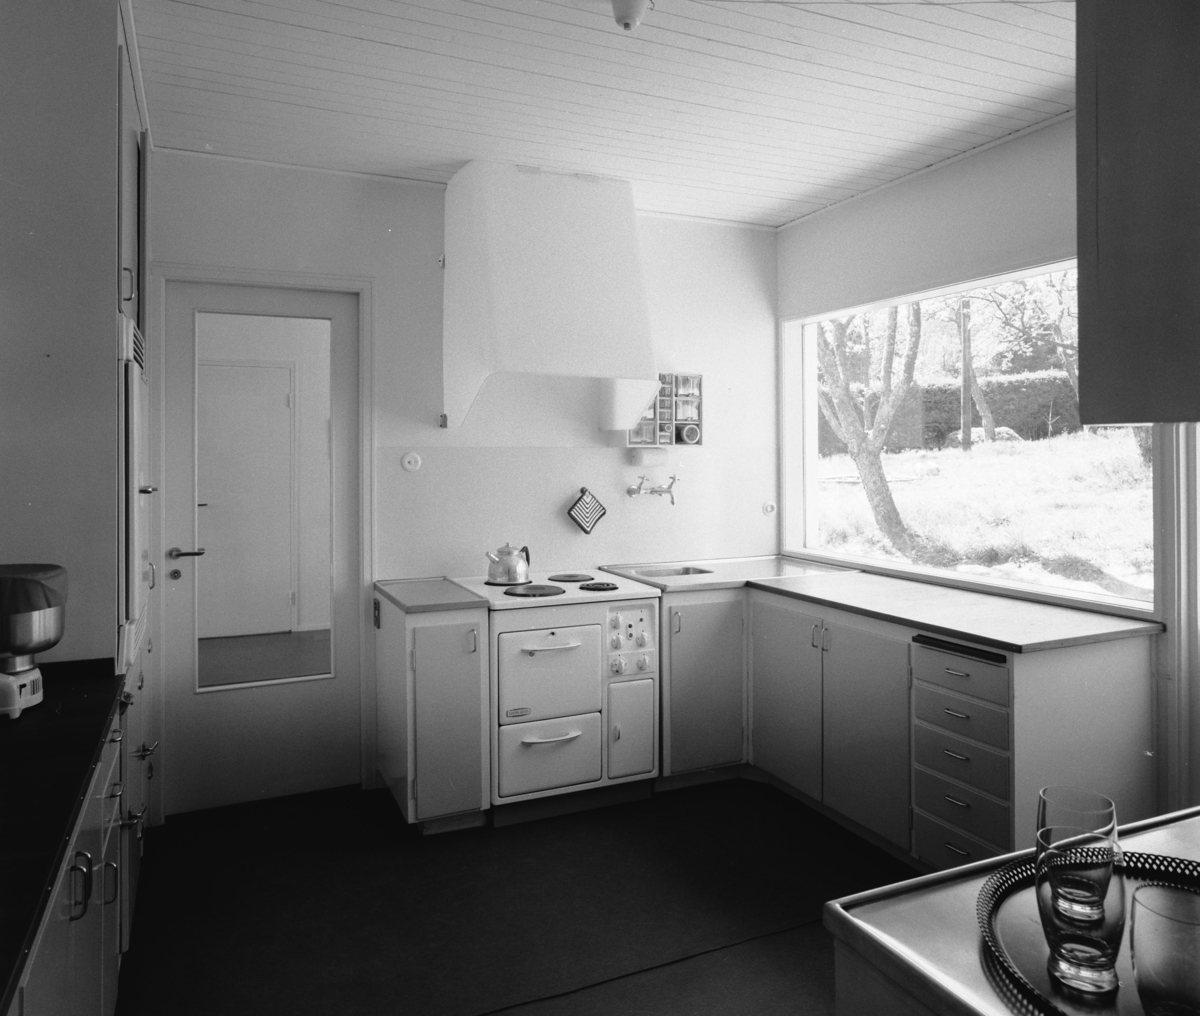 villa Ahnborg
Interiör, kök med arbetsbänk mot fönster